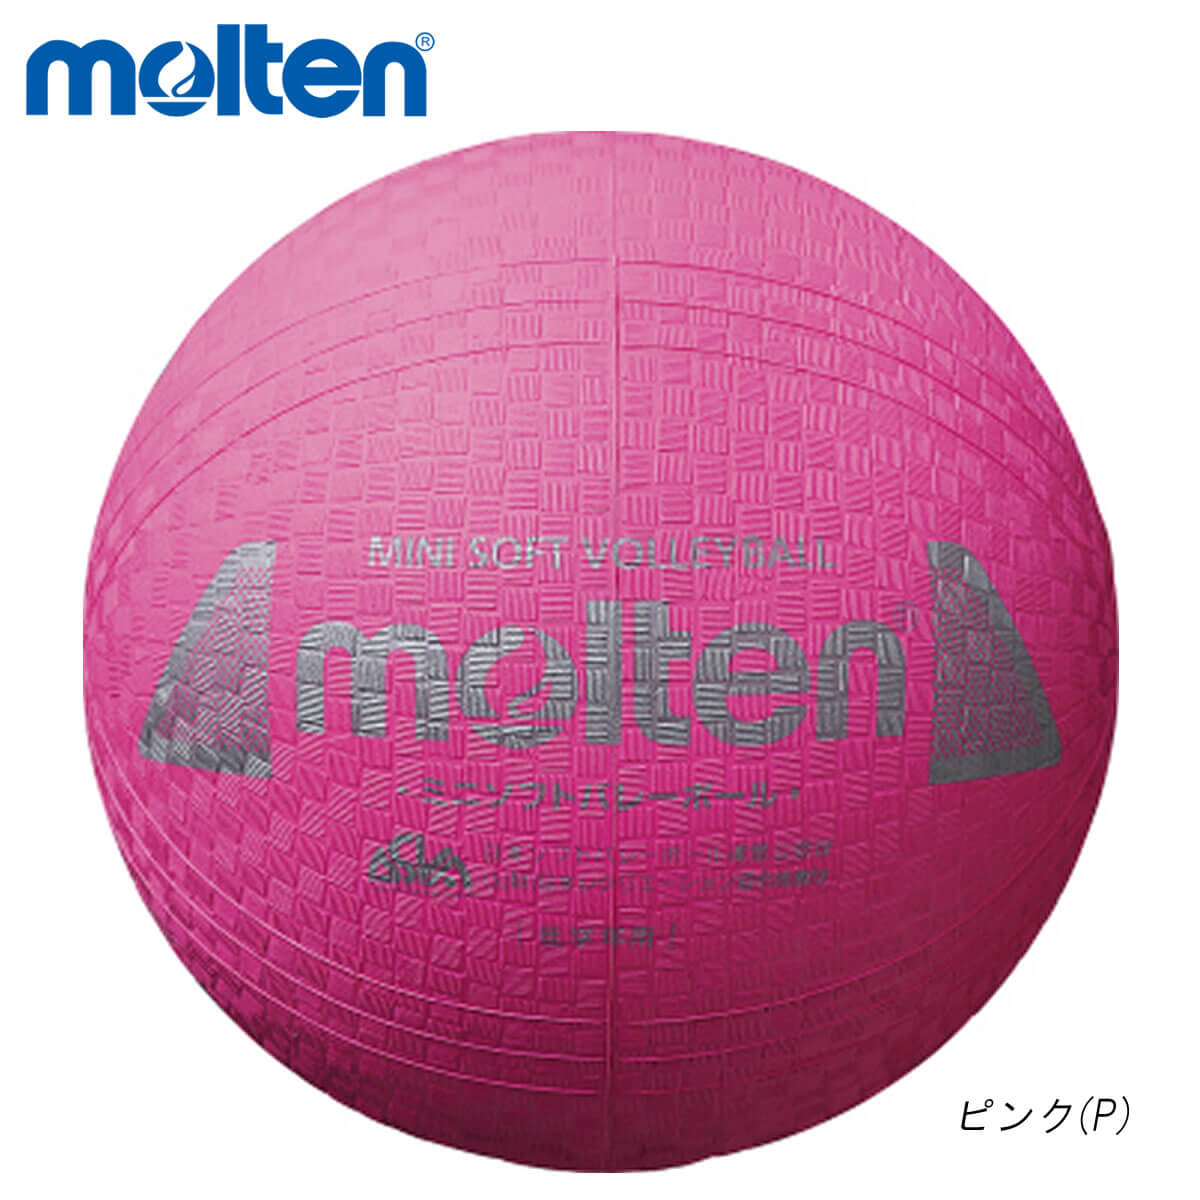 molten S2Y1200-P 現金特価 バレーボール ボール 2021 モルテン 取り寄せ ミニソフトバレーボール